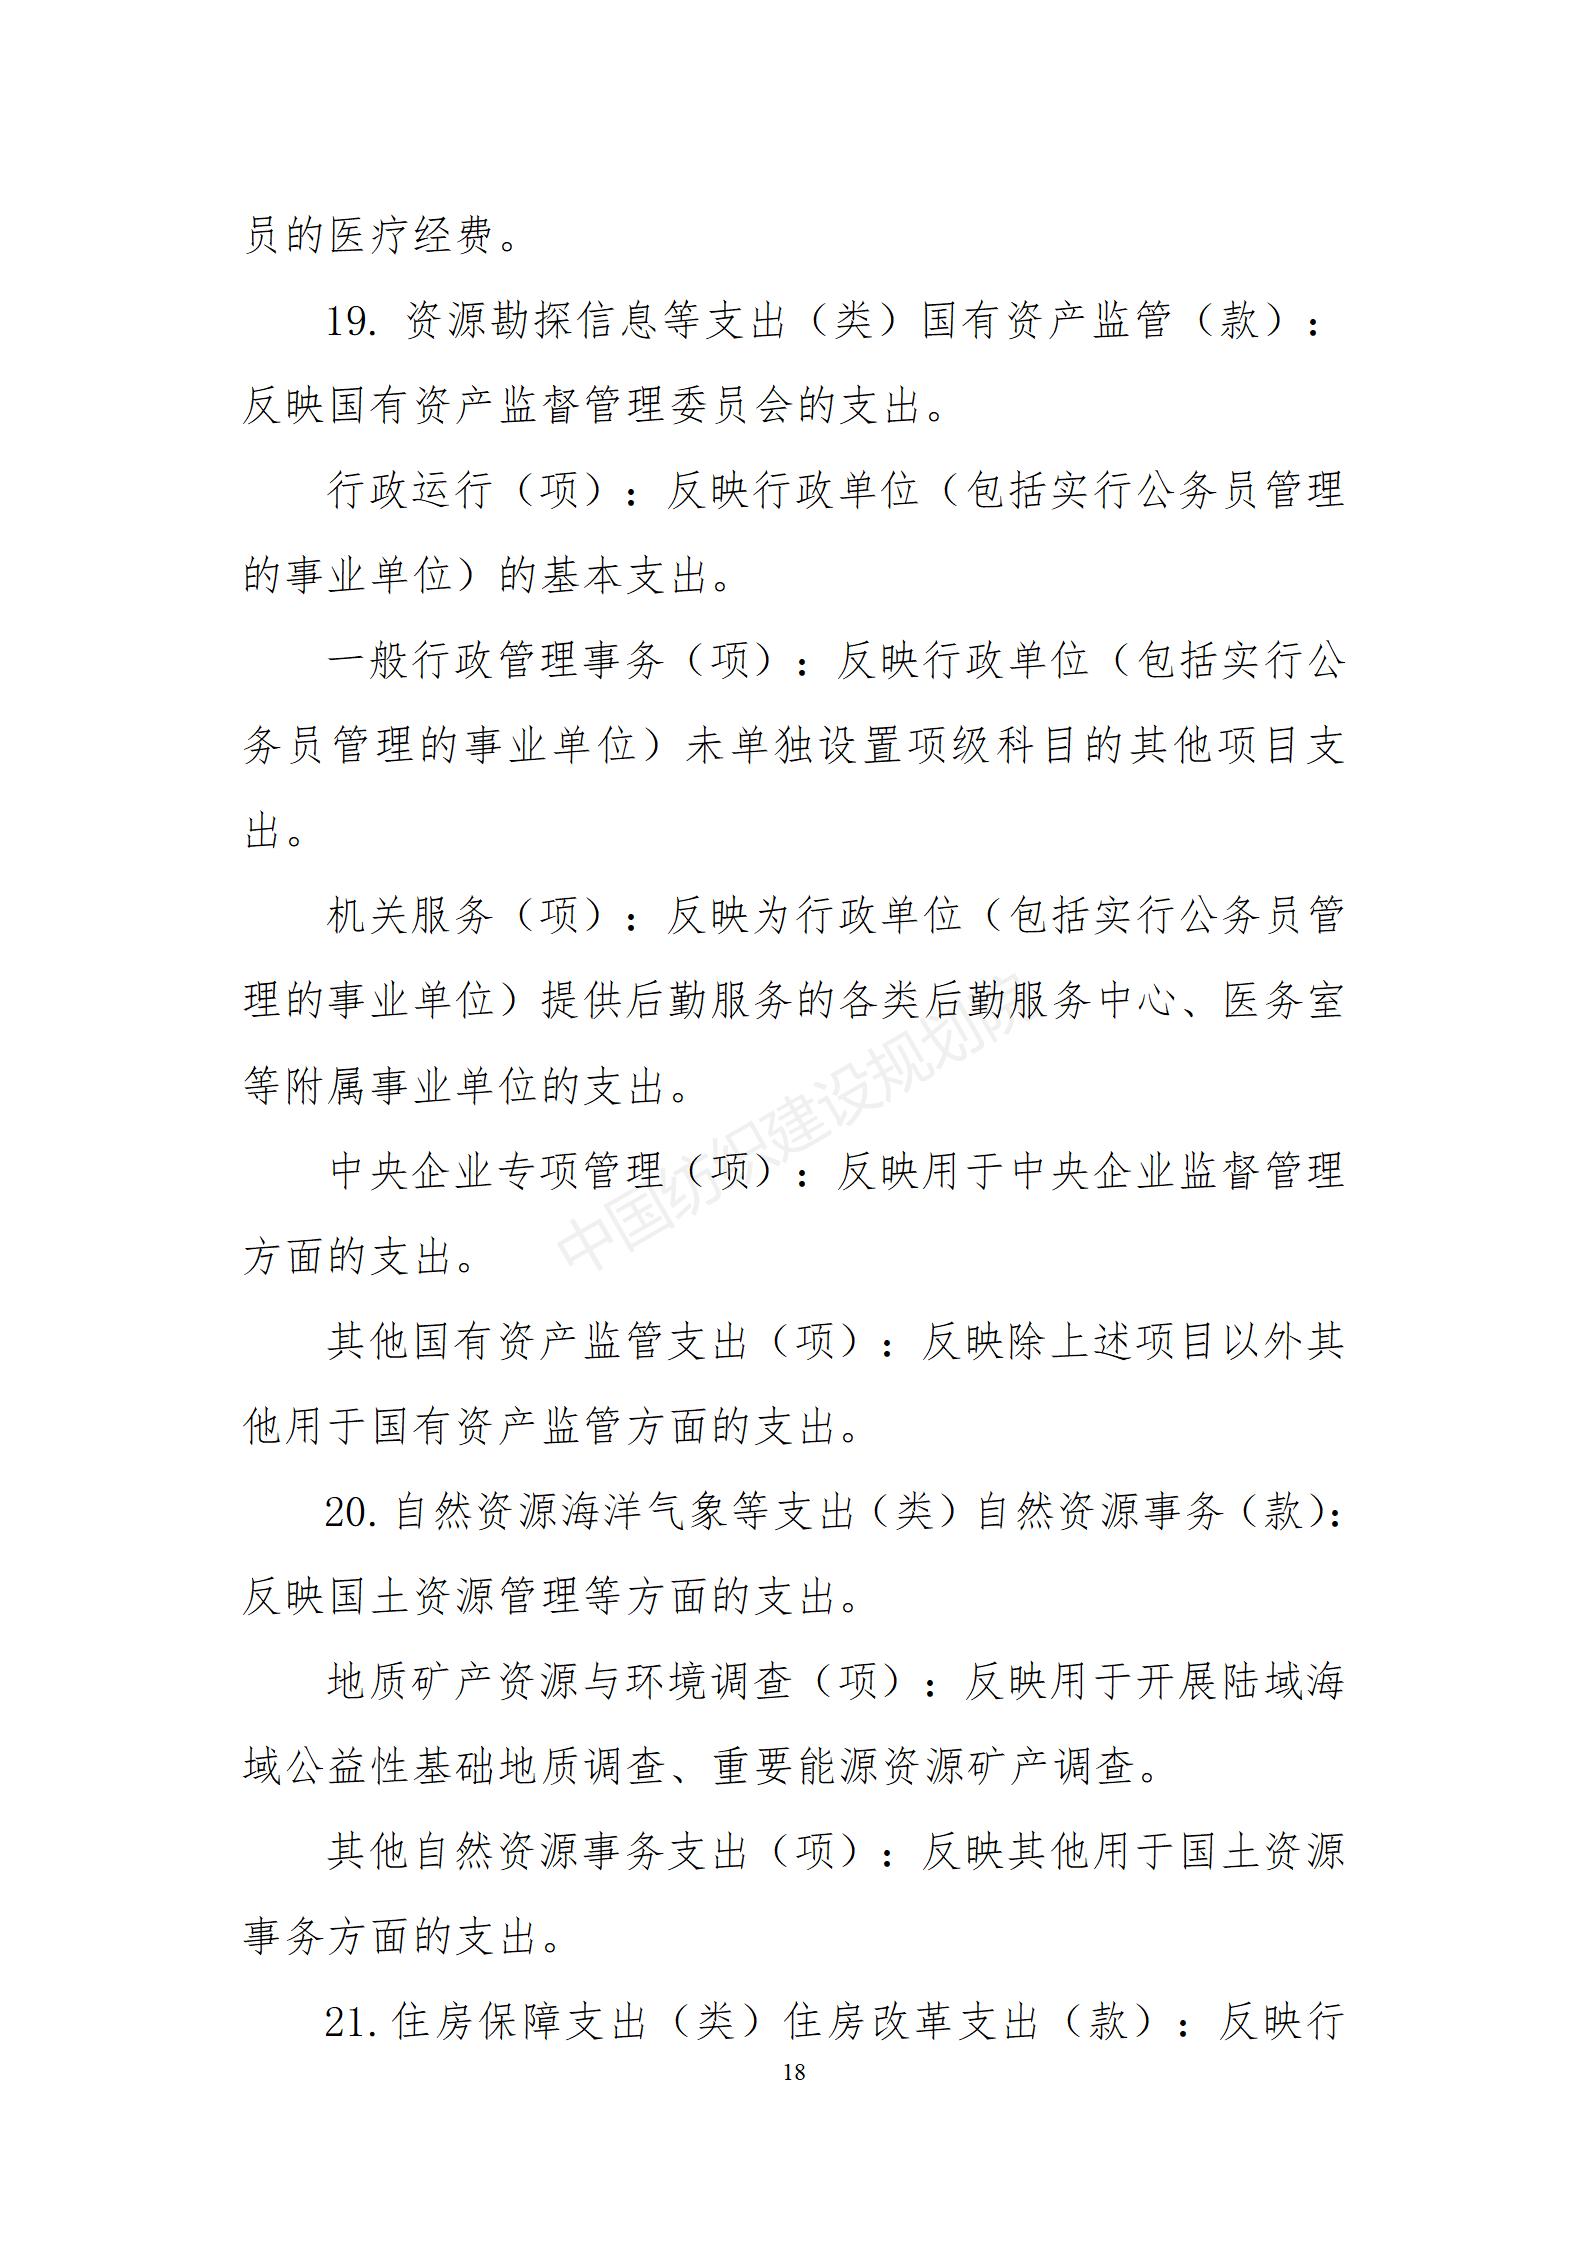 中国纺织建设规划院2021年度部门决算（公开稿）_19